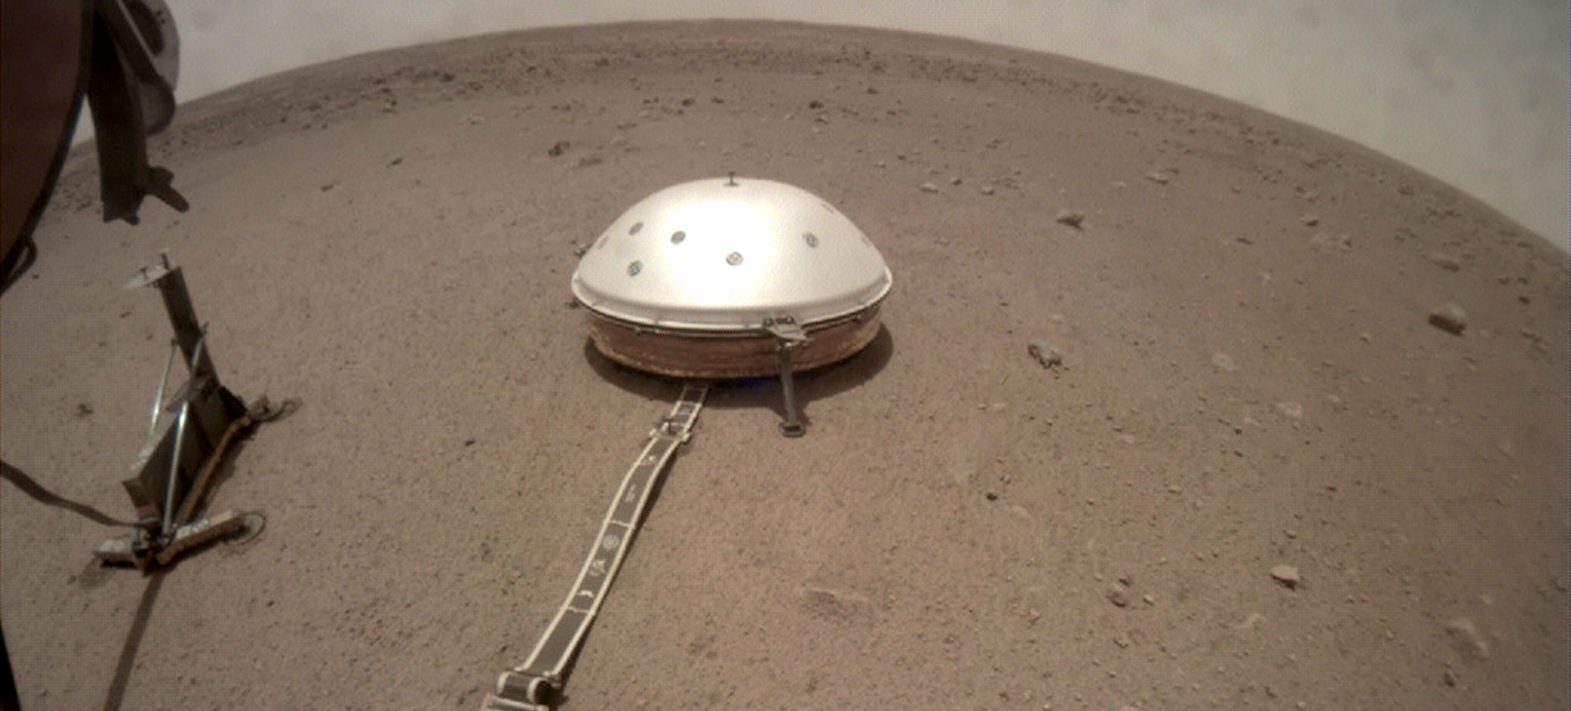 La mission martienne InSight de la NASA prolongée de 2 ans